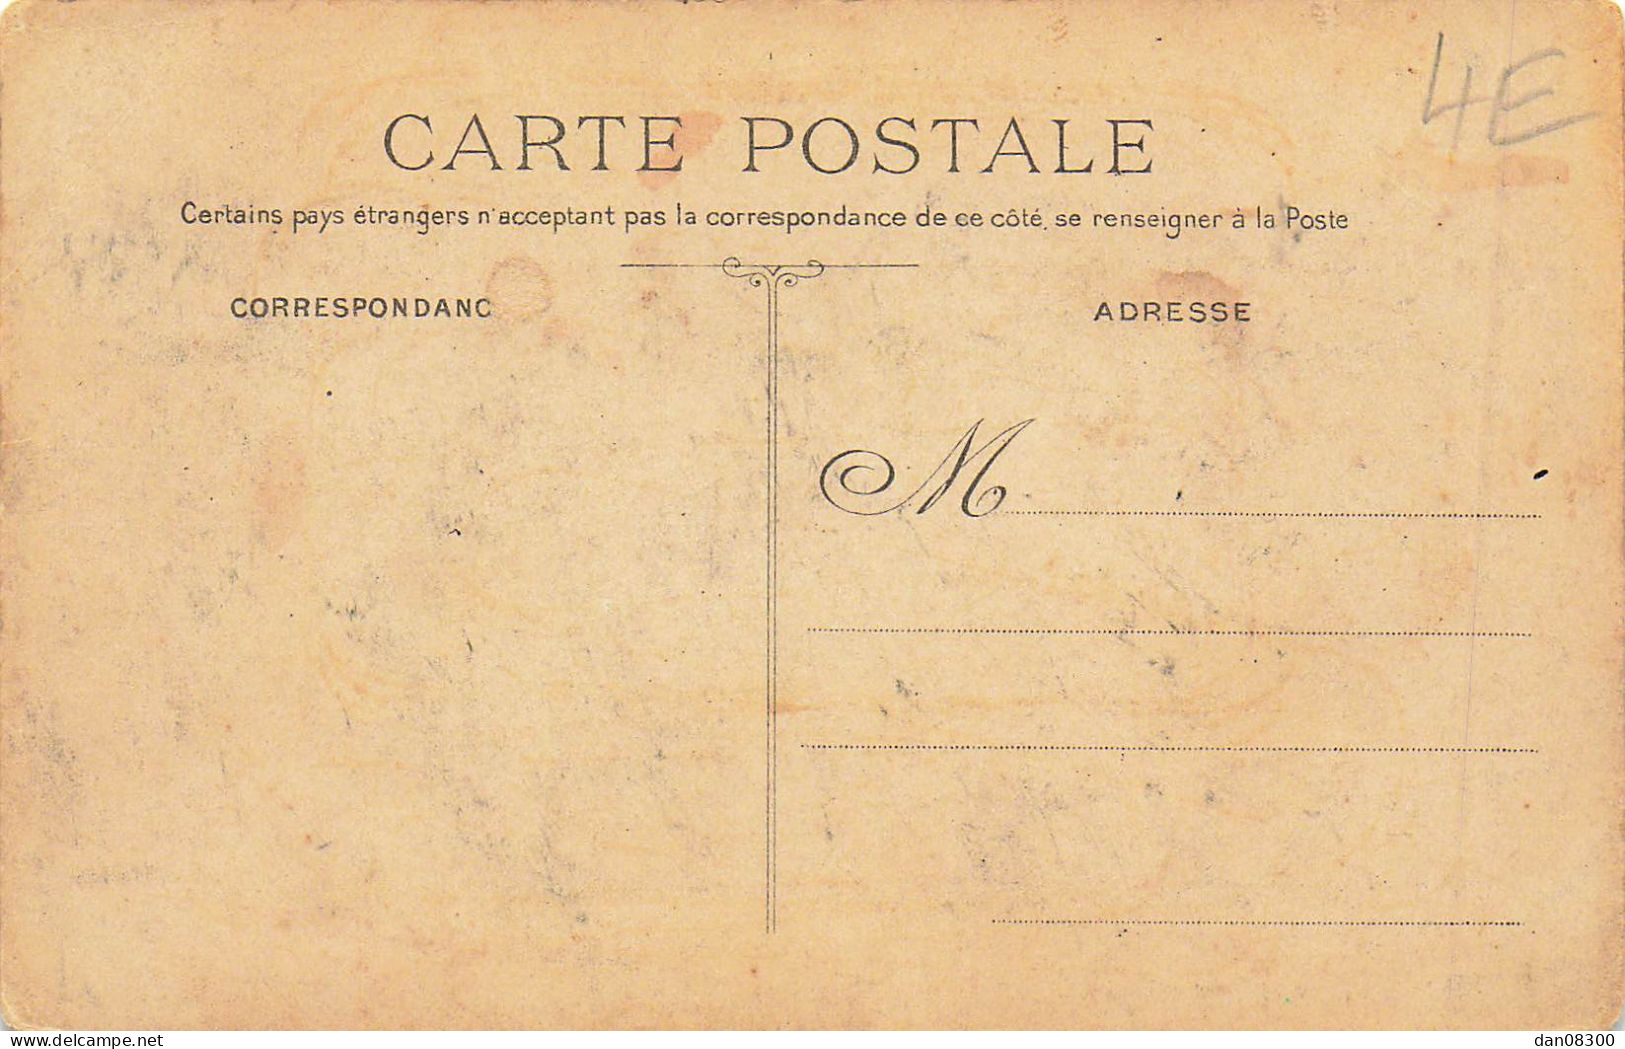 RARE  60 CRUE DE L'OISE 4 MARS 1910 BORAN LES JEUX D'ARC DISPARAISSANT SOUS LES EAUX - Boran-sur-Oise